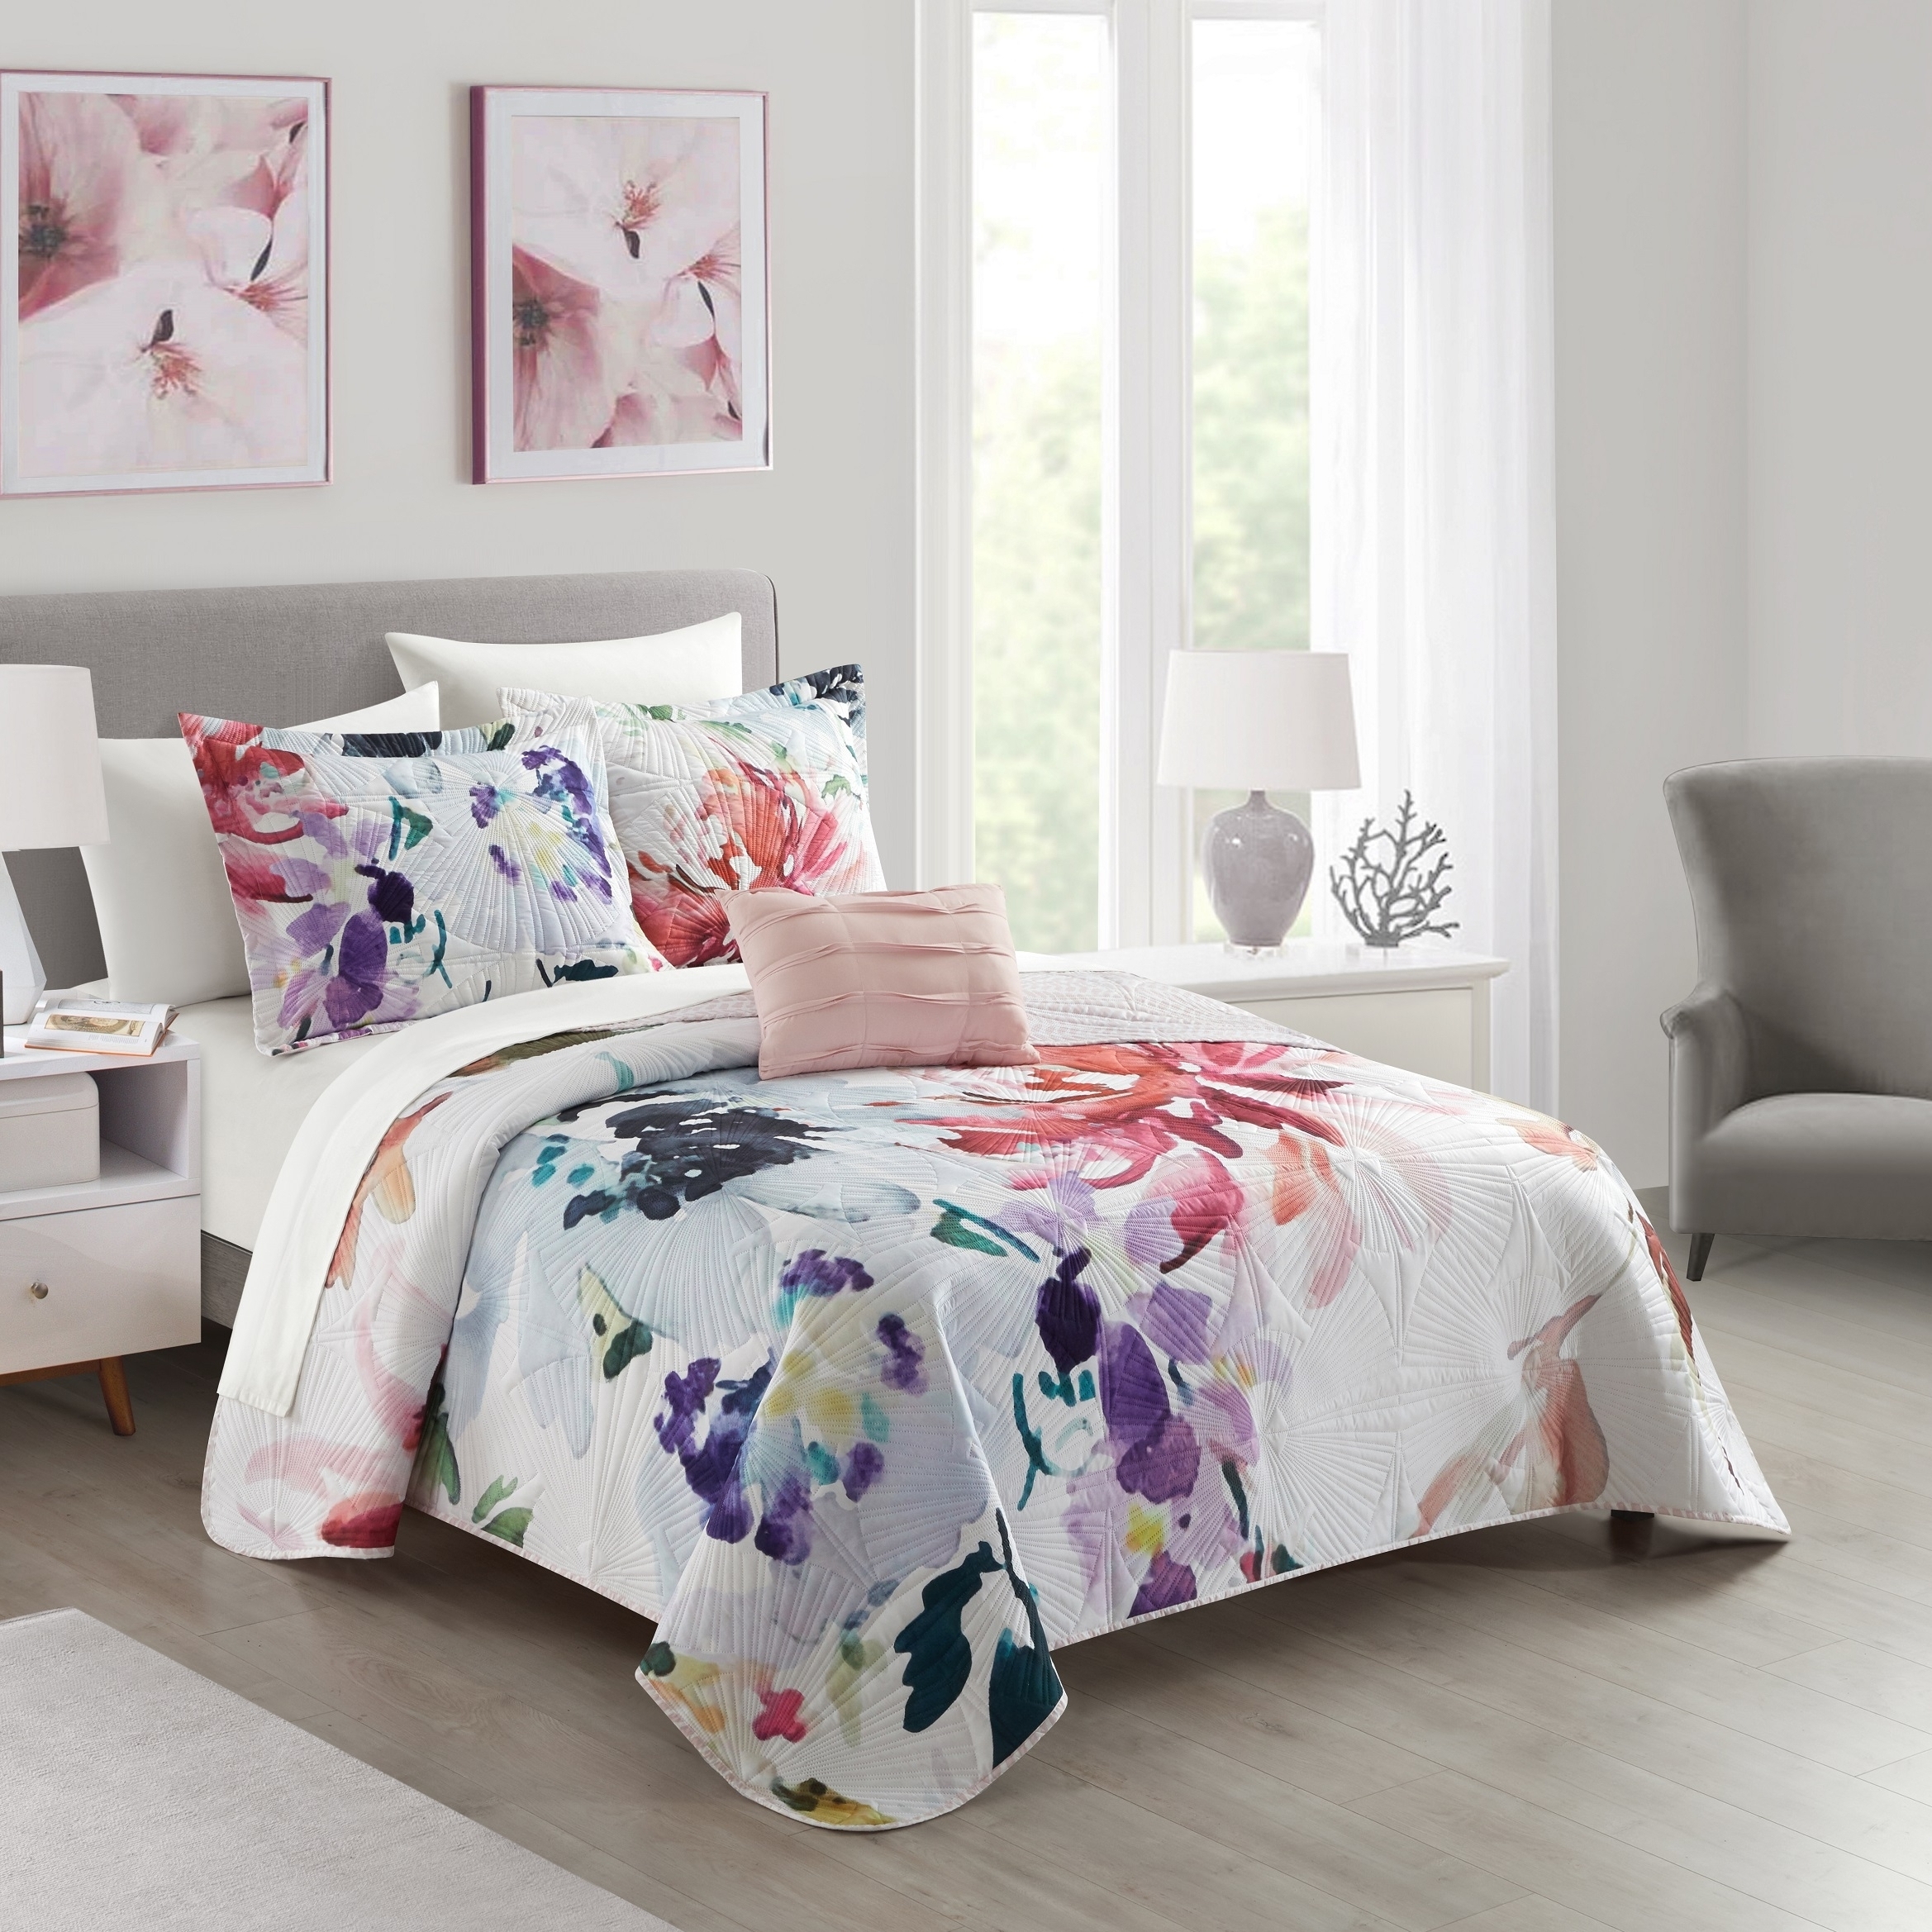 Ateus Palace 3 Or 4Piece Reversible Quilt Set Floral Watercolor Design Bedding - Mateus Purple, King (4 Piece)